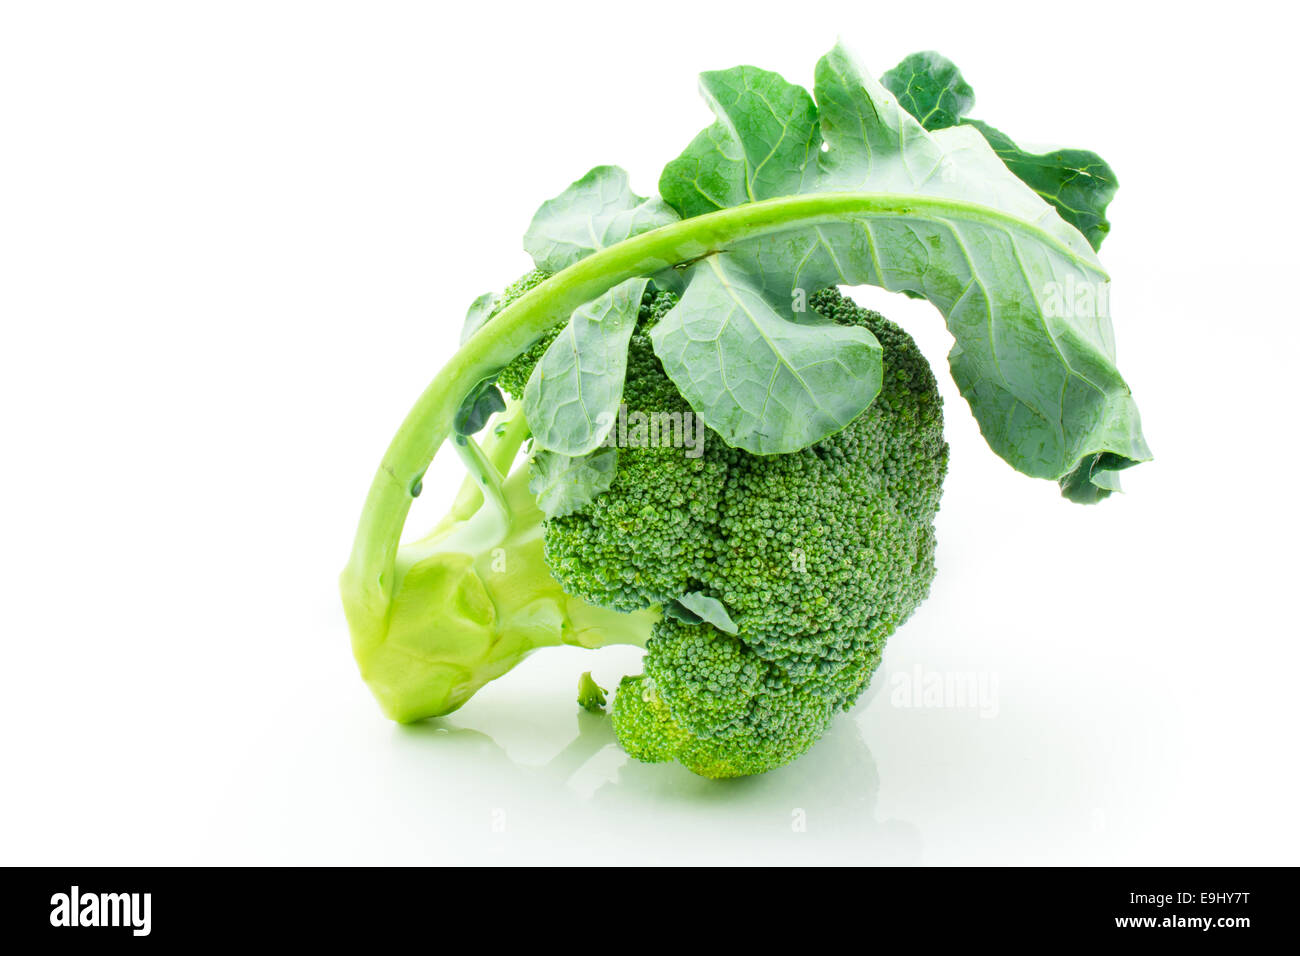 Fresh raw broccoli isolated on white background Stock Photo